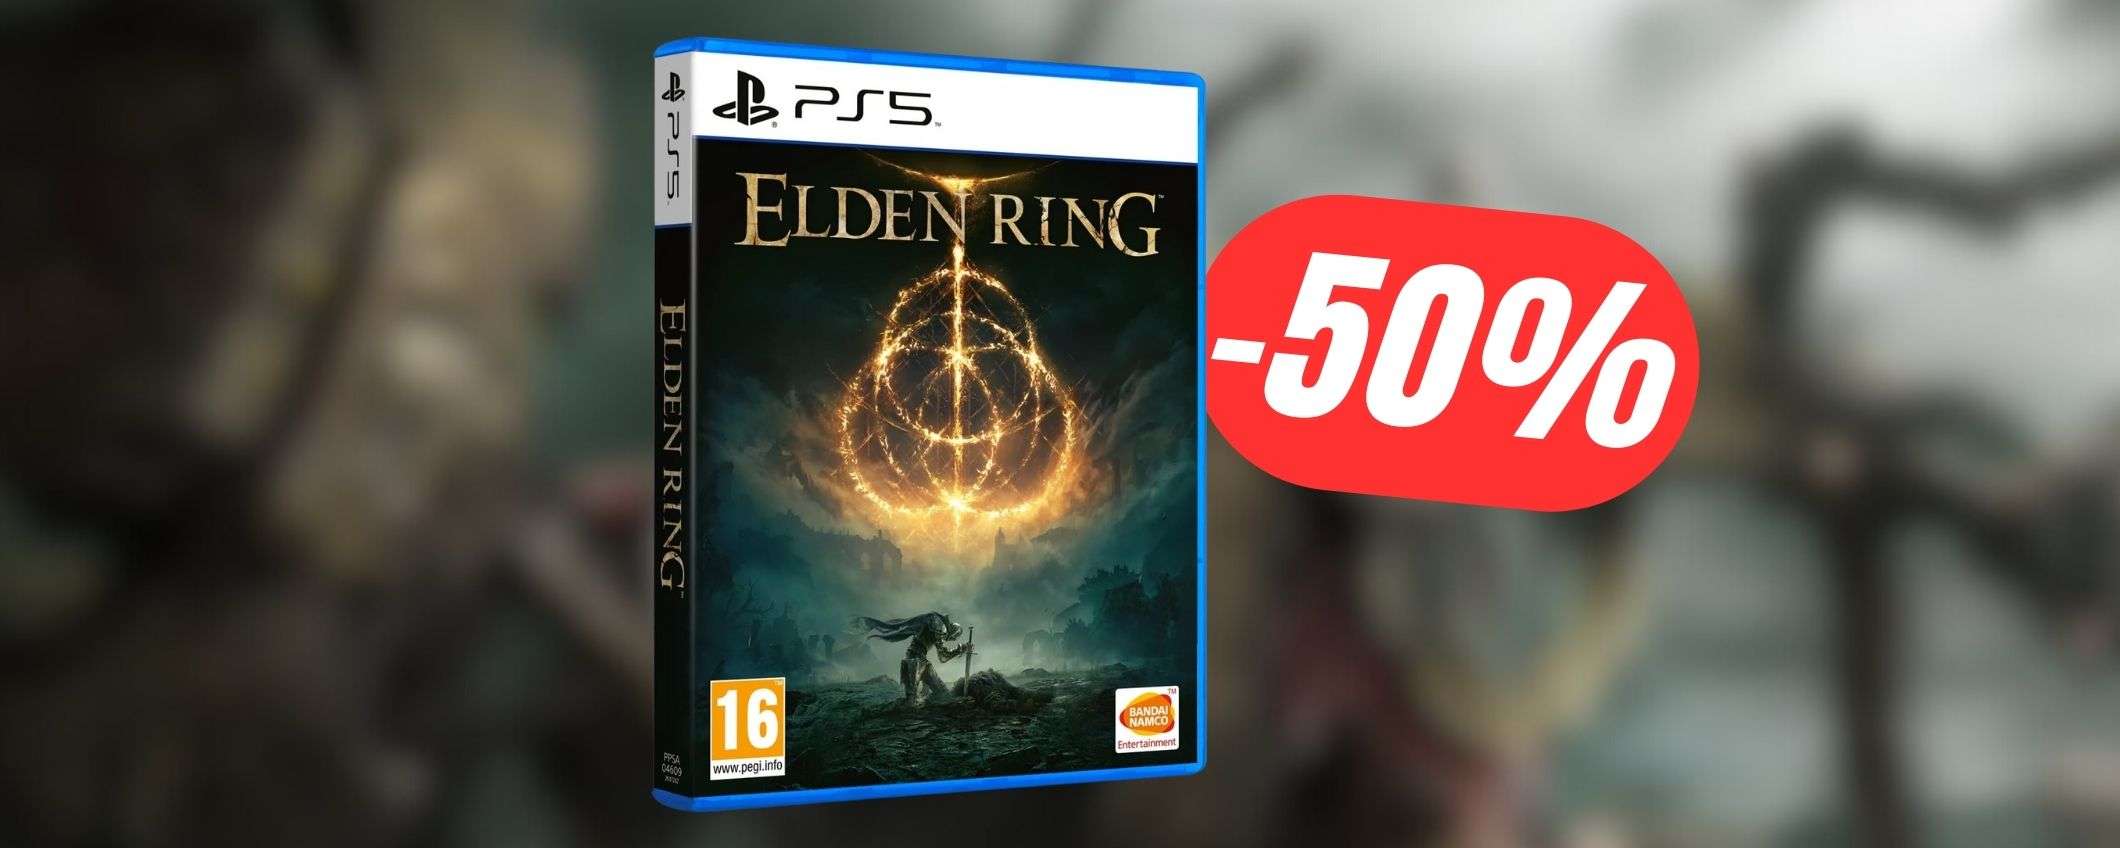 Elden Ring per PS5: con lo SCONTO del -50% lo paghi 34€!